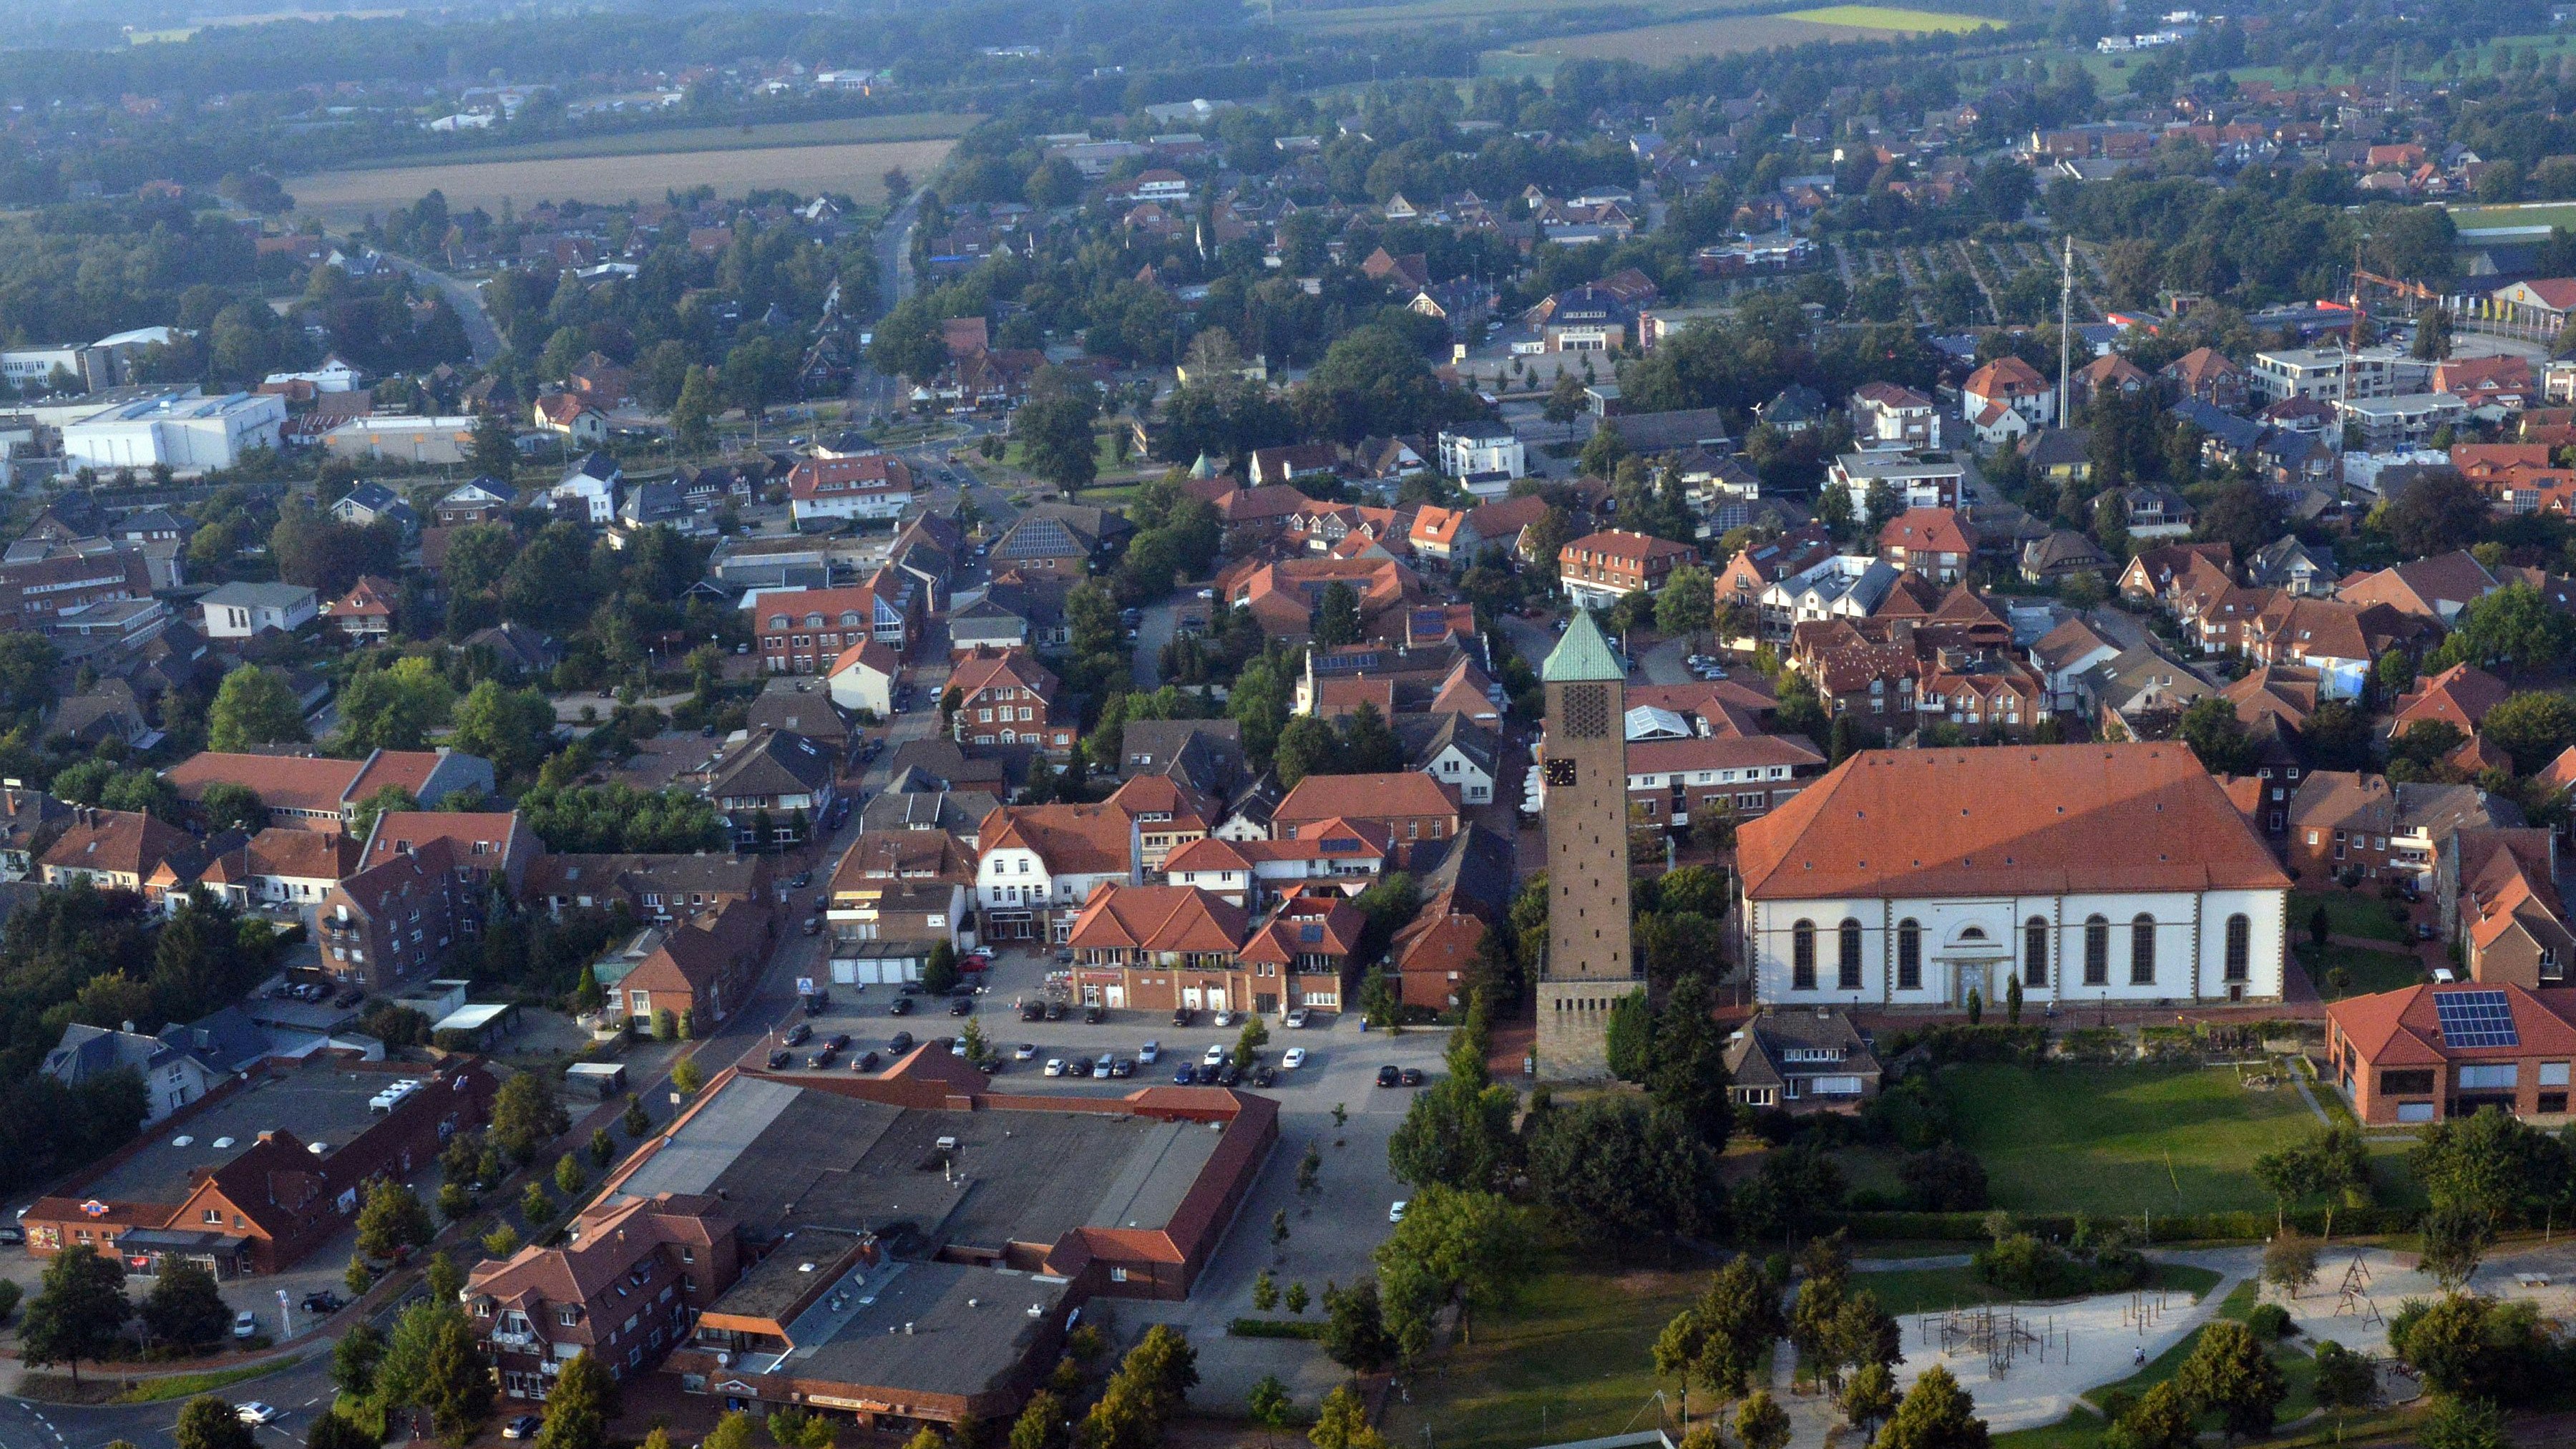 Löningen von oben: Die Stadt an der Hase wurde erstmals im Jahre 822 erwähnt. Foto: Siemer